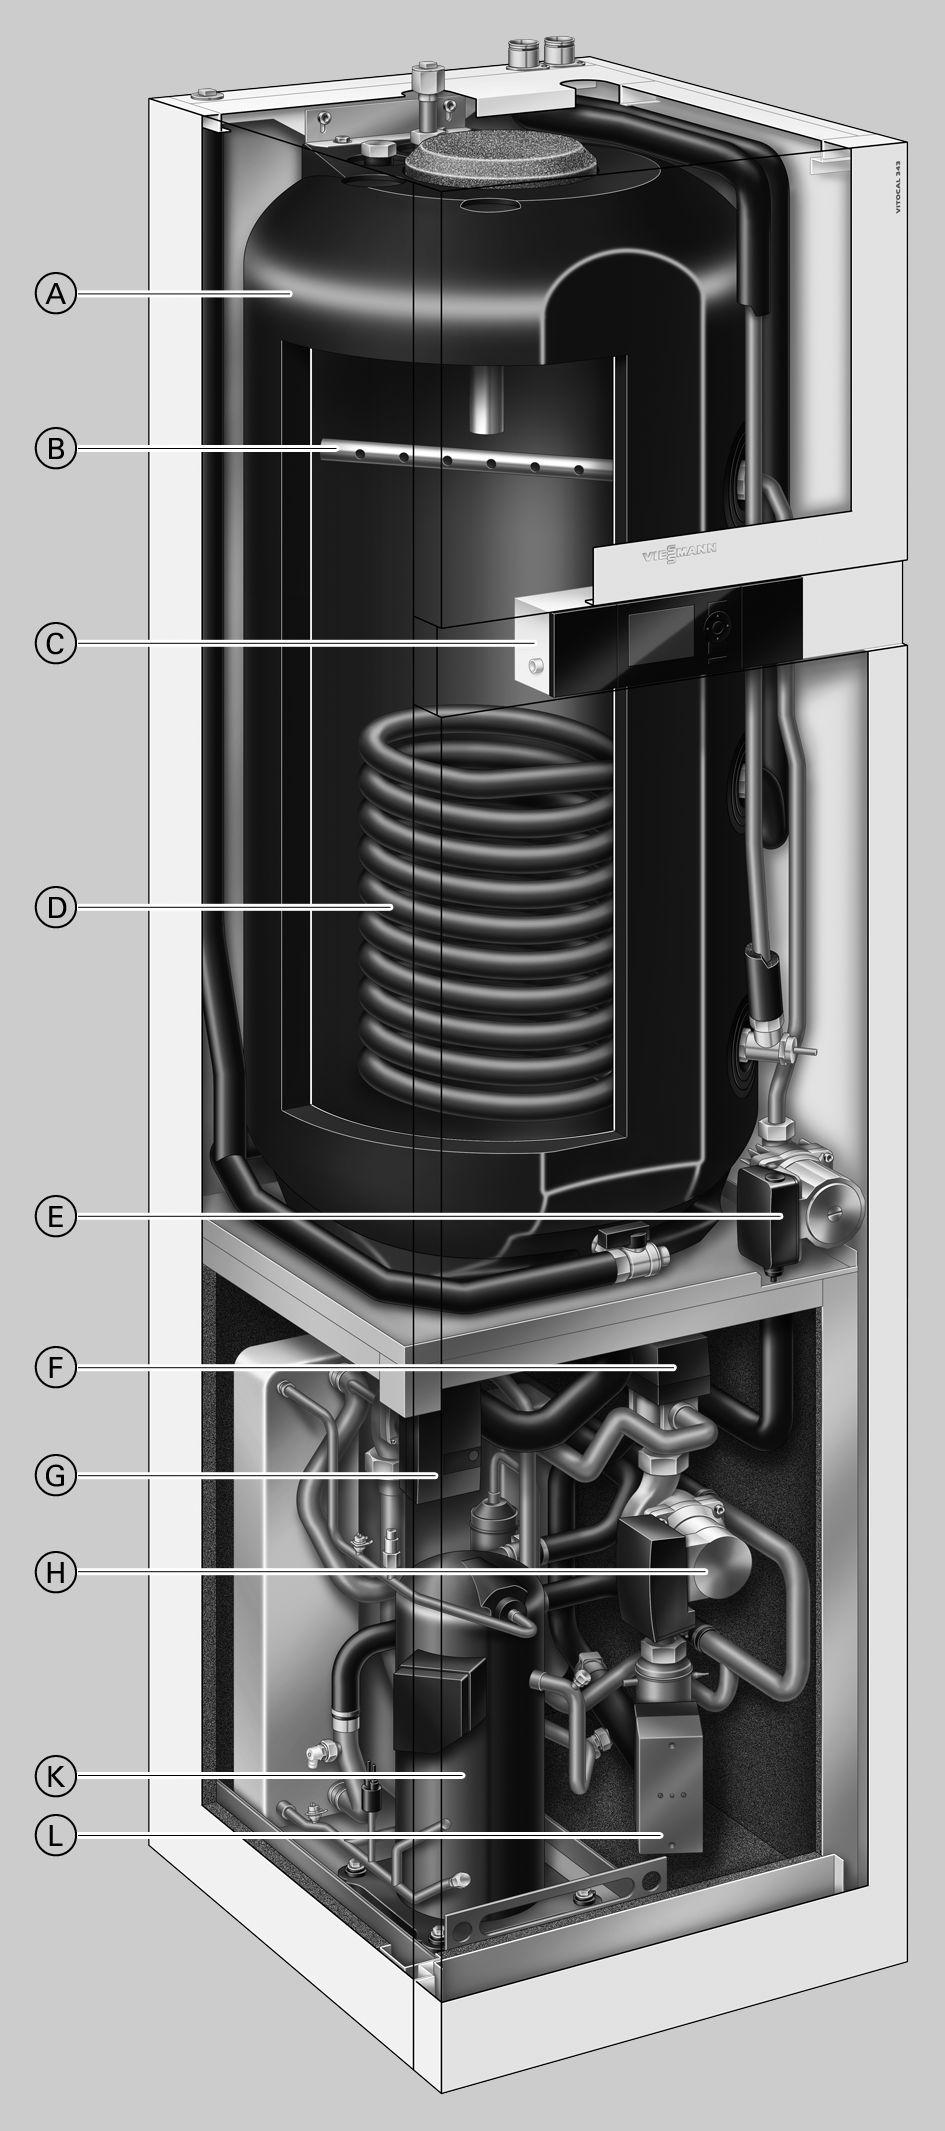 Voordelen Vitocal 343-G A Laadboiler met 220 liter inhoud B Laadlans voor boilerverwarming C Weersafhankelijke, digitale warmtepompregeling Vitotronic 200 D Warmtewisselaar zonnesysteem E